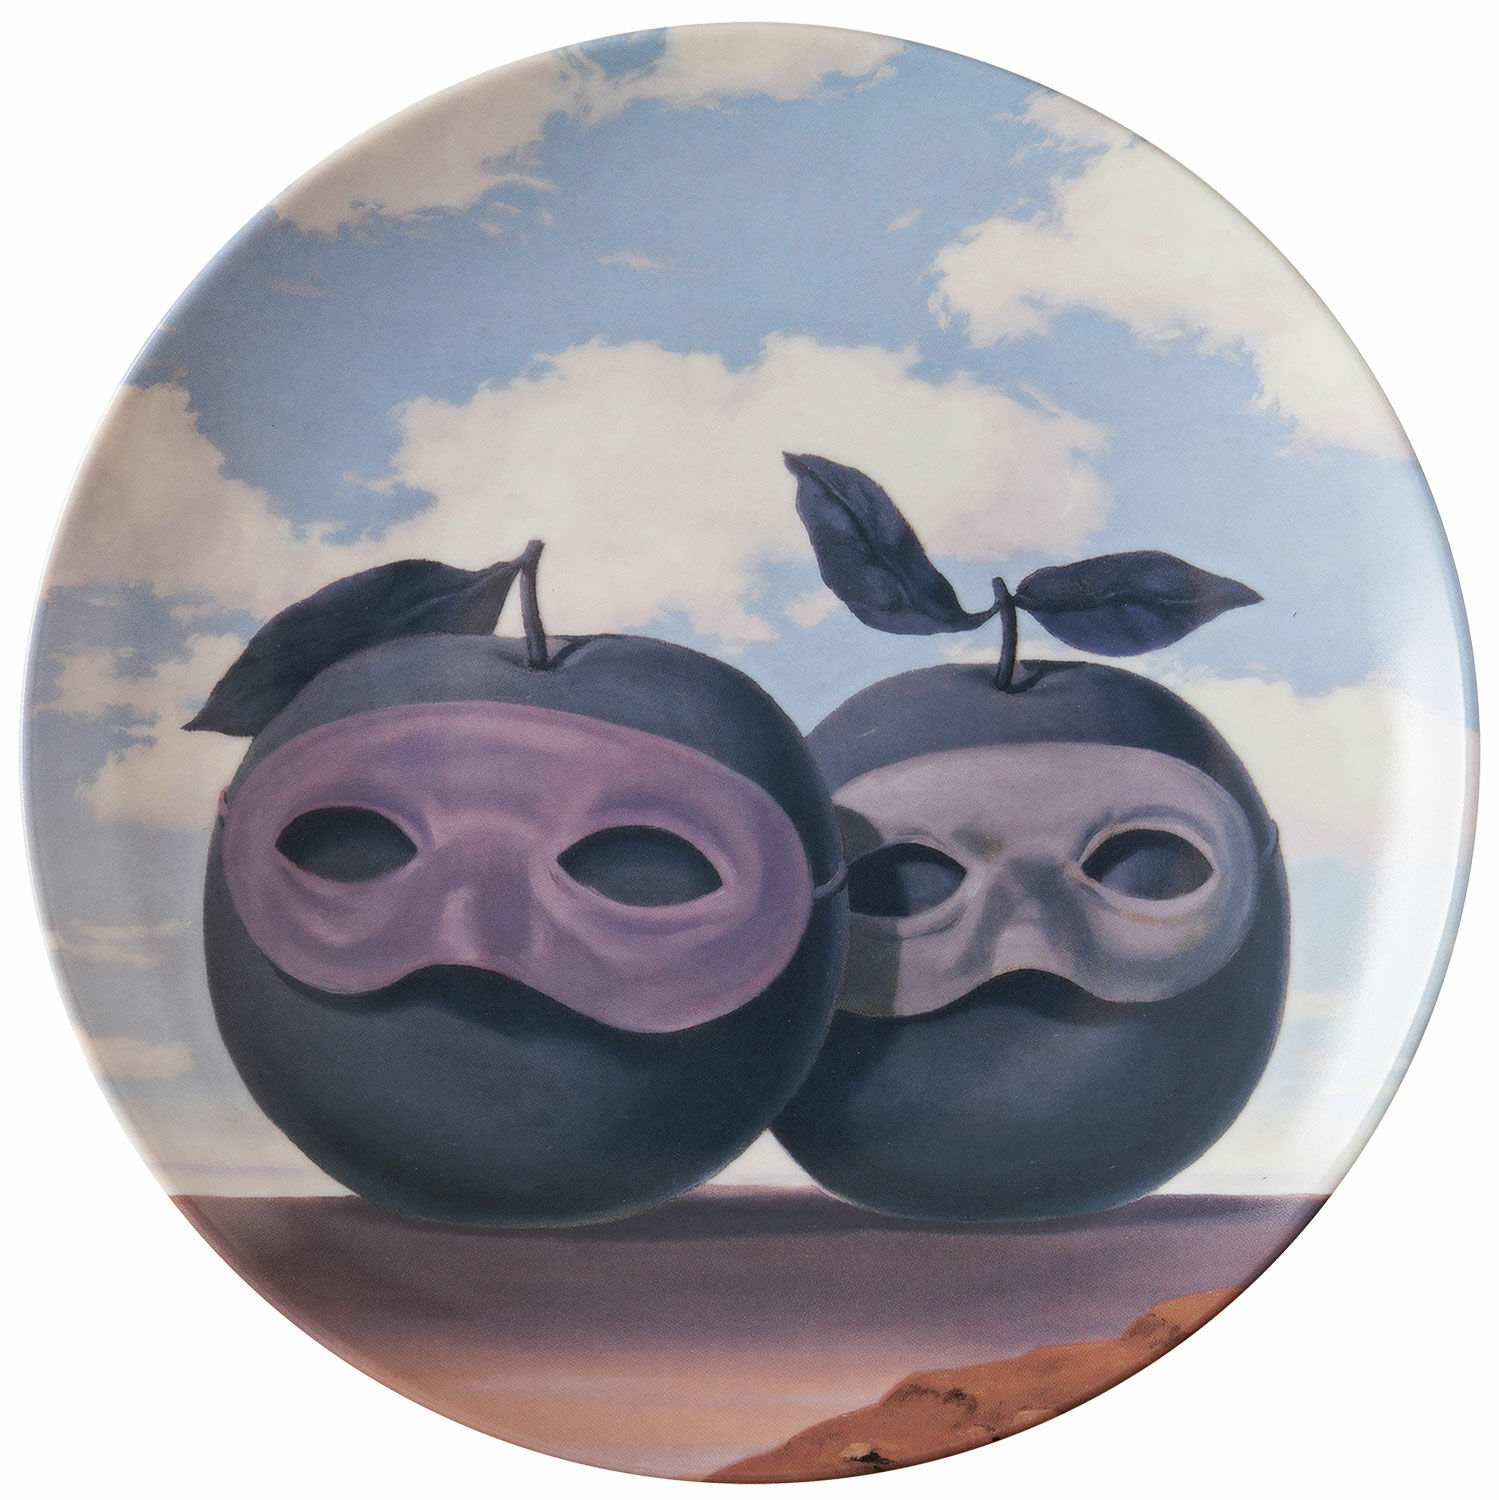 Porcelain plate "Le Domaine Enchanté VII" by René Magritte